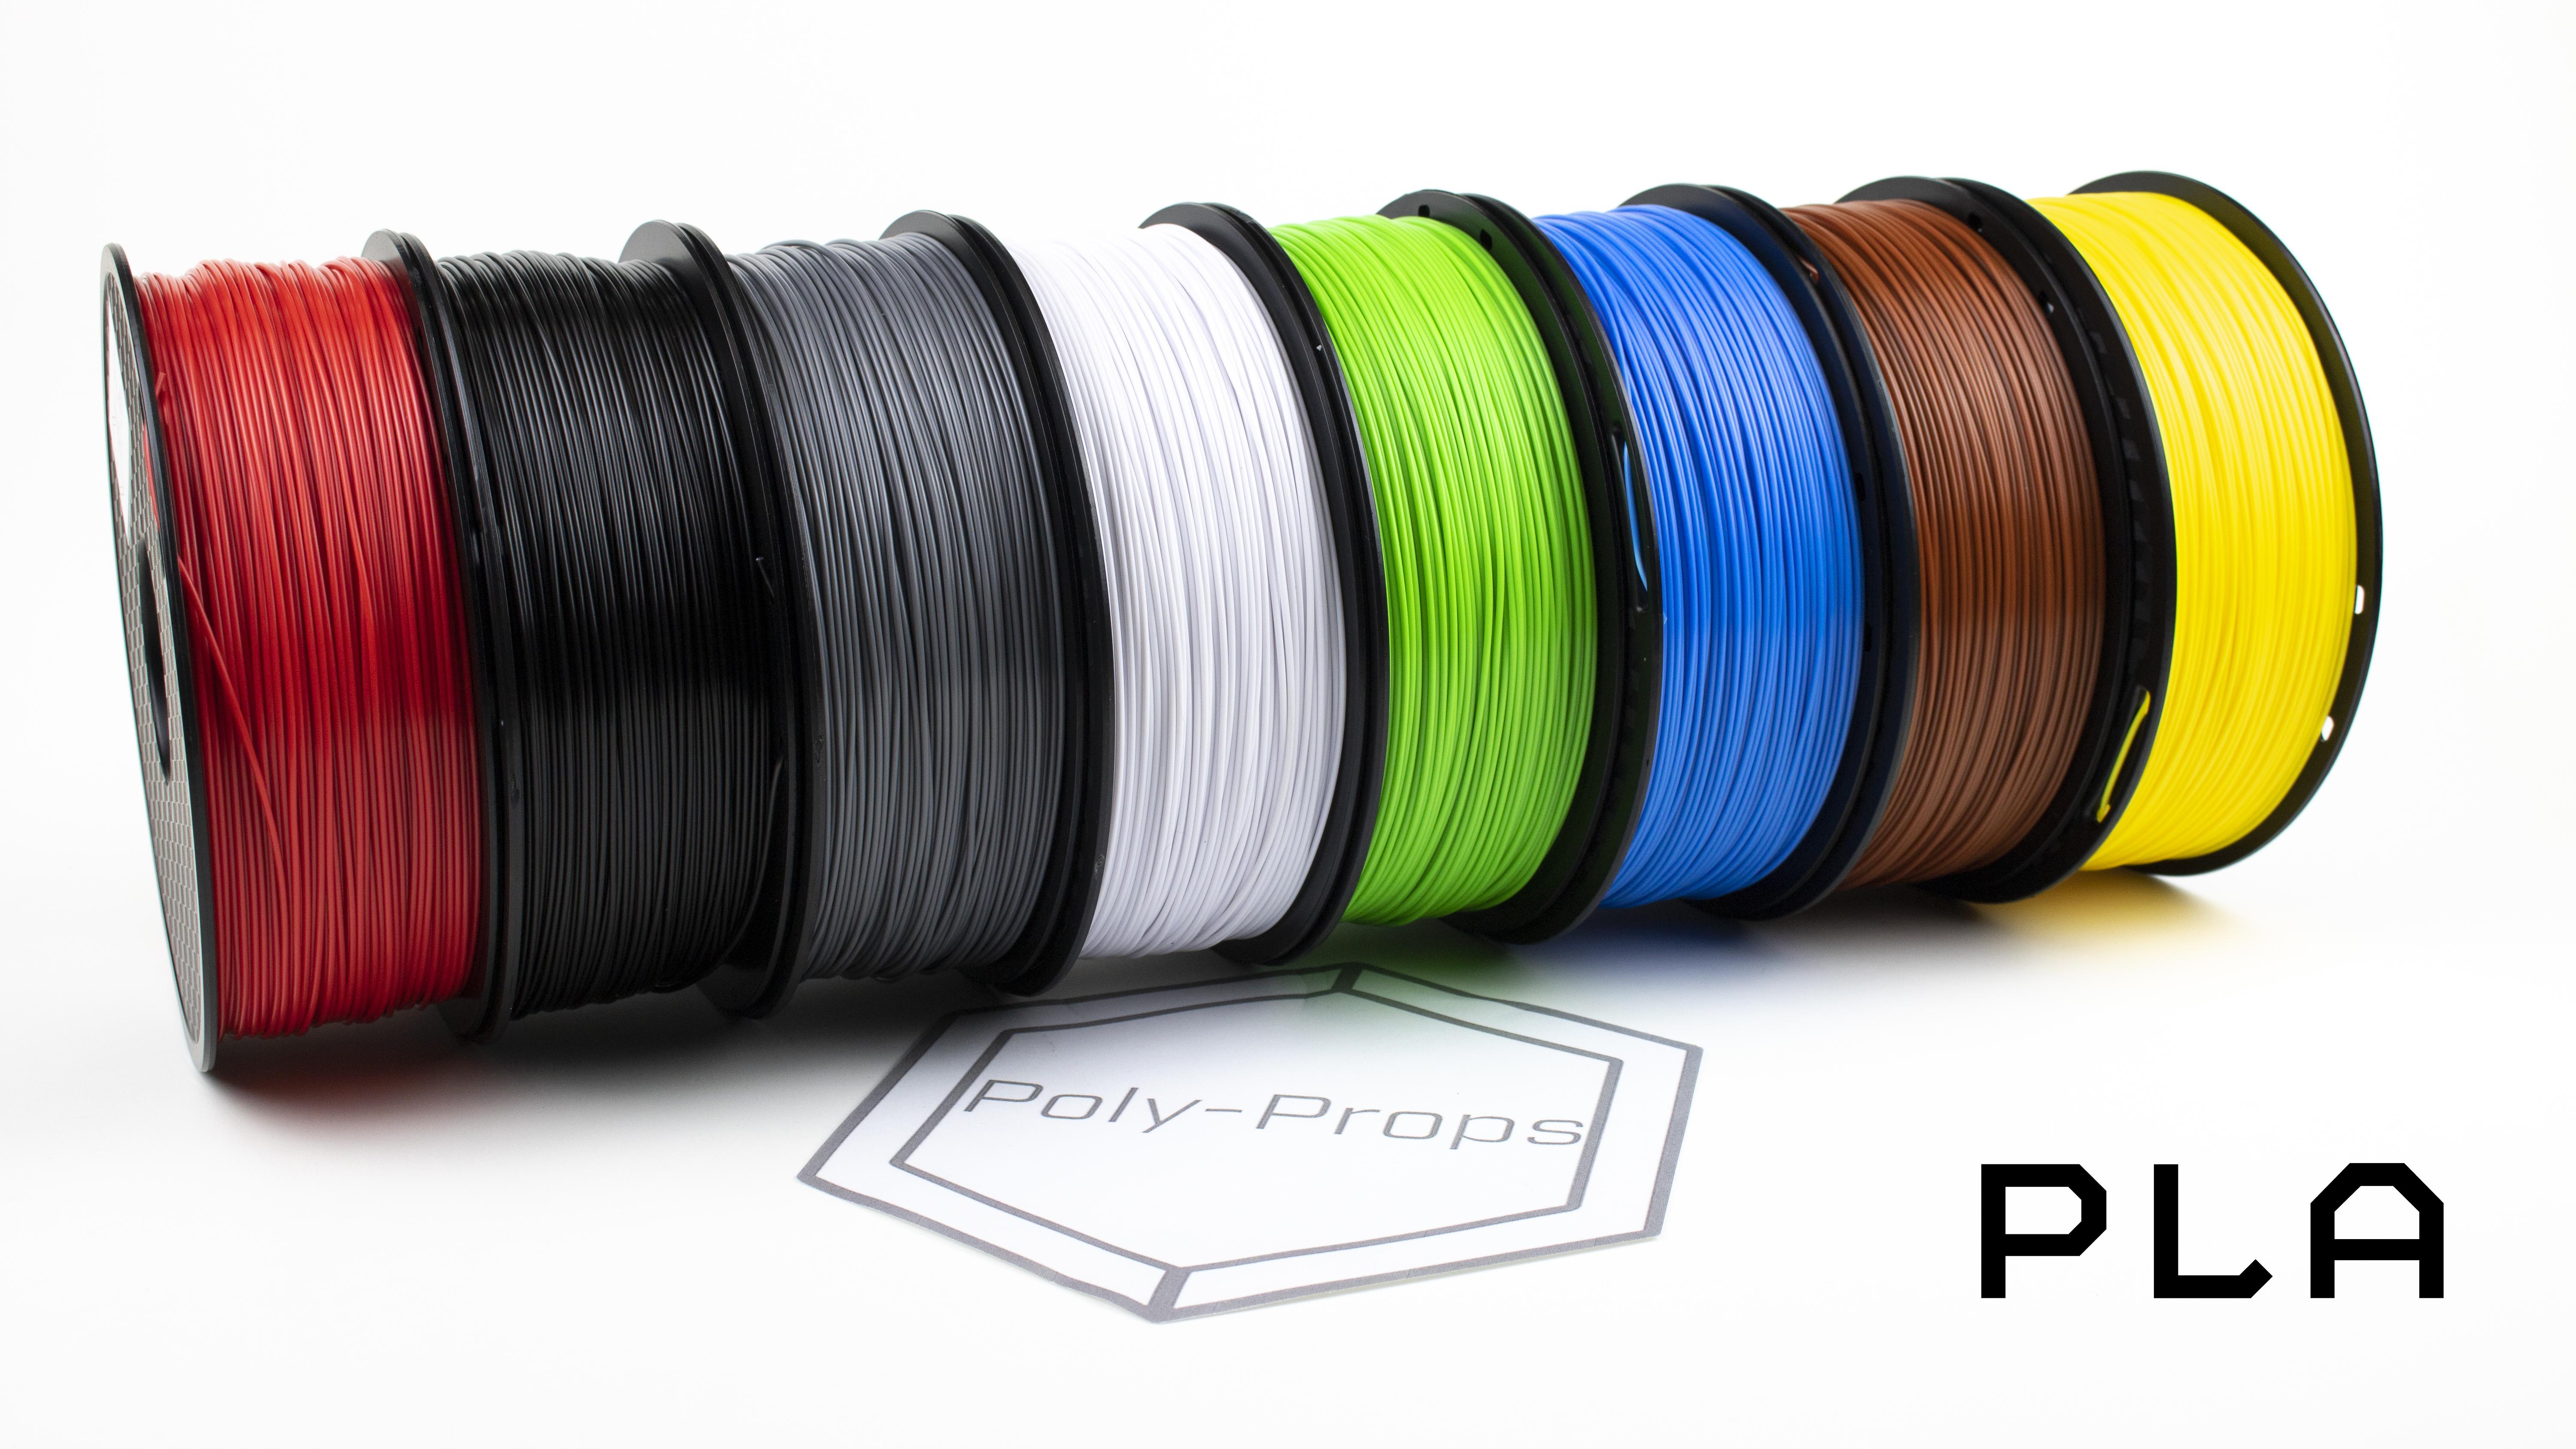 Printing filament